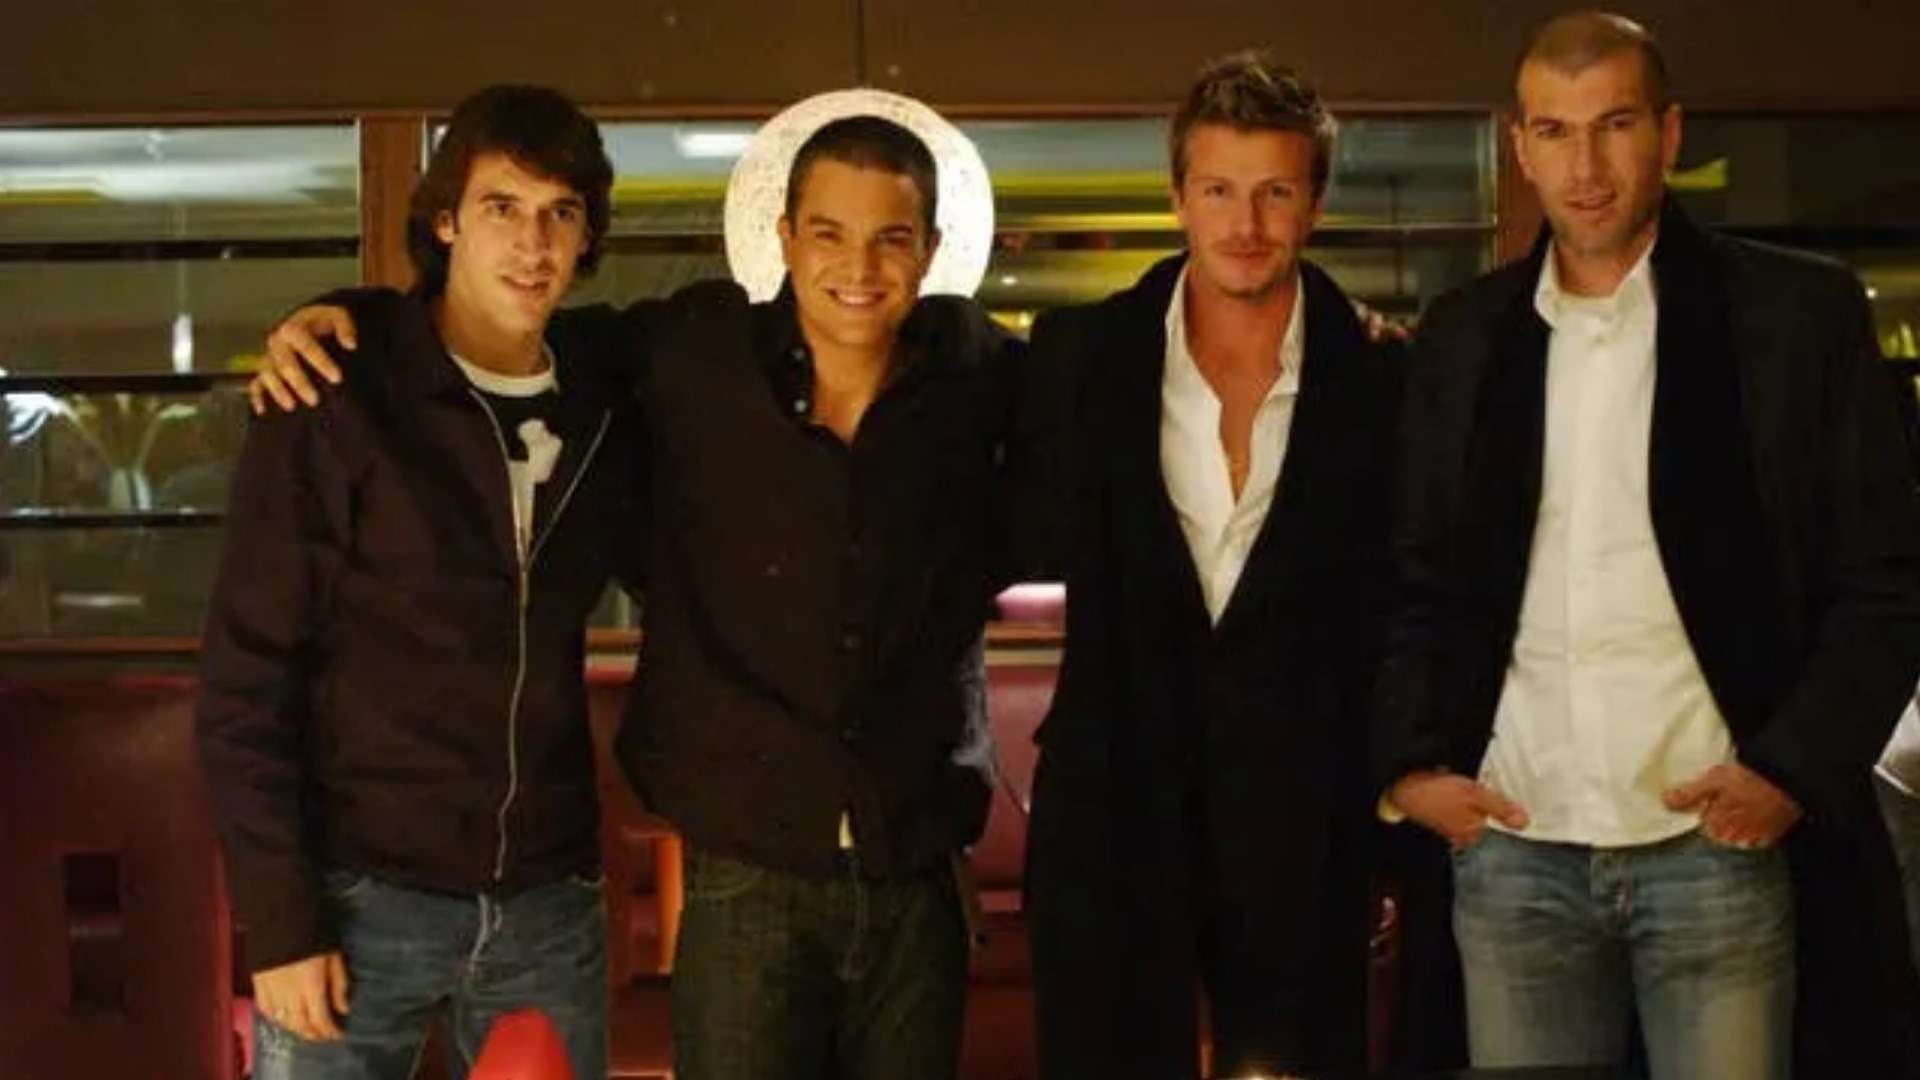 Kuno Becker with Zidane, Beckham and Raúl